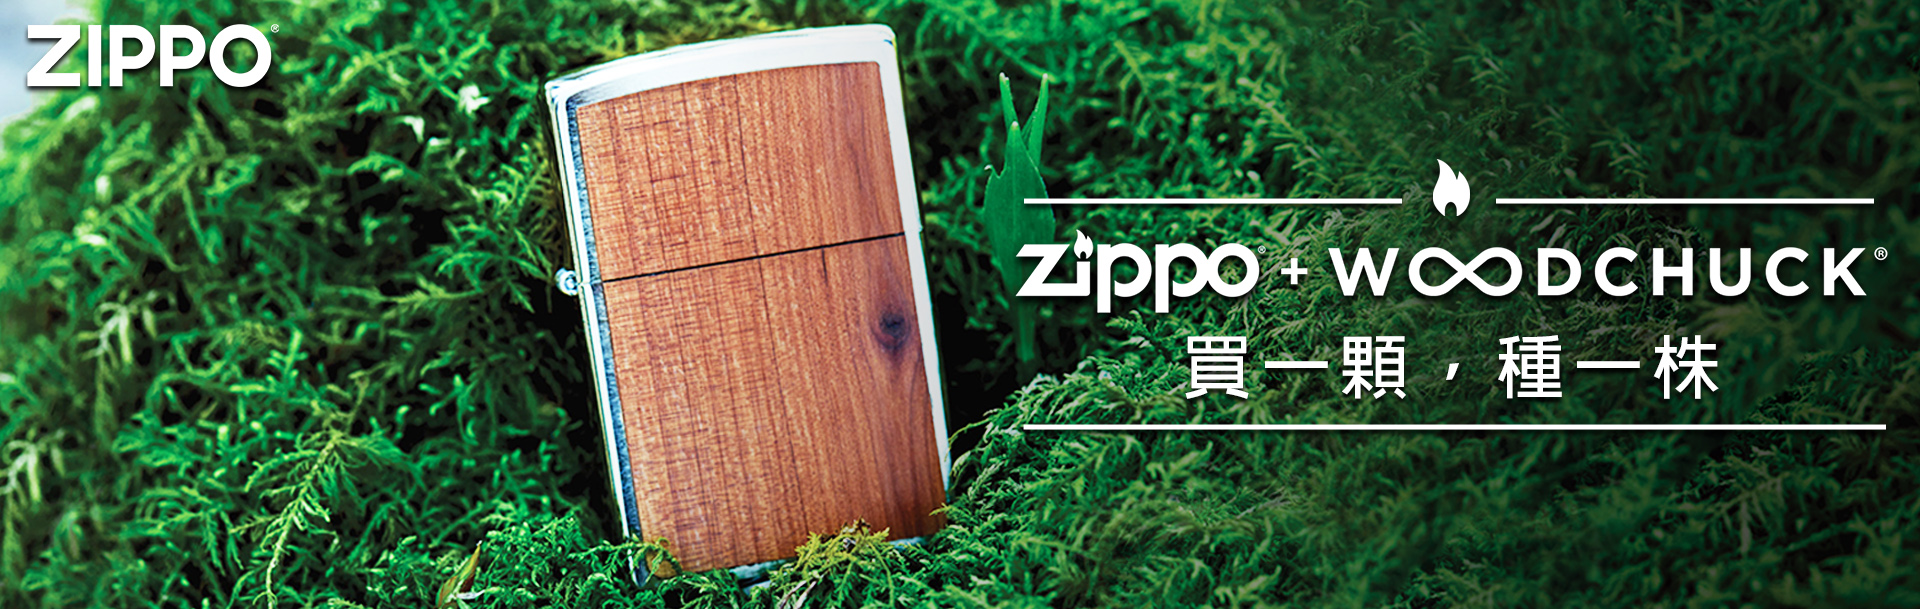 zippo,台北哪裡可以買Zippo，zippo台灣總代理,打火機,zippo防風打火機,zippo台灣官方網站,zippo打火機維修，公司貨，正品，Zippo台灣，客服時間，促銷活動，維修打火機，Zippo門市，Zippo台灣-綠色計畫